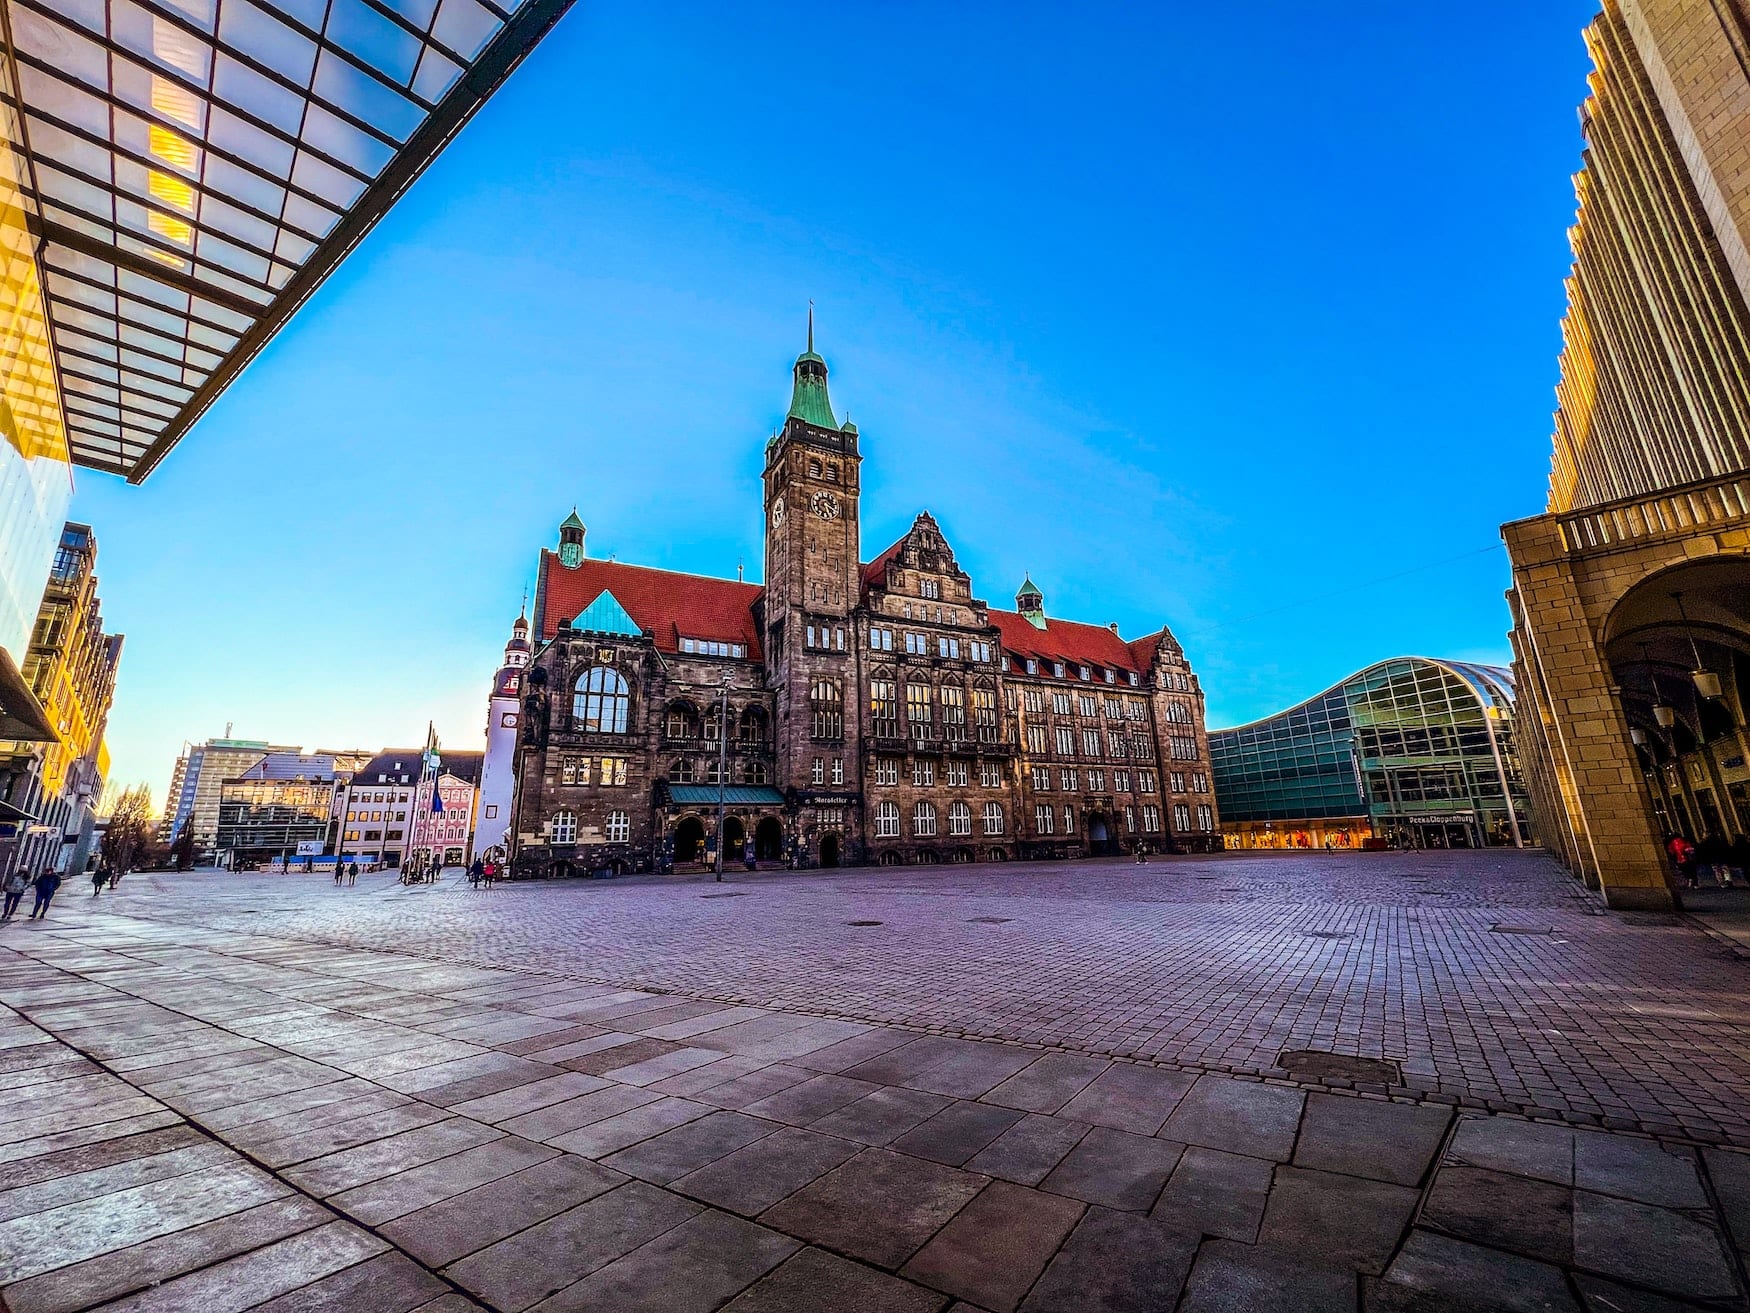 Marktplatz und Rathaus in Chemnitz